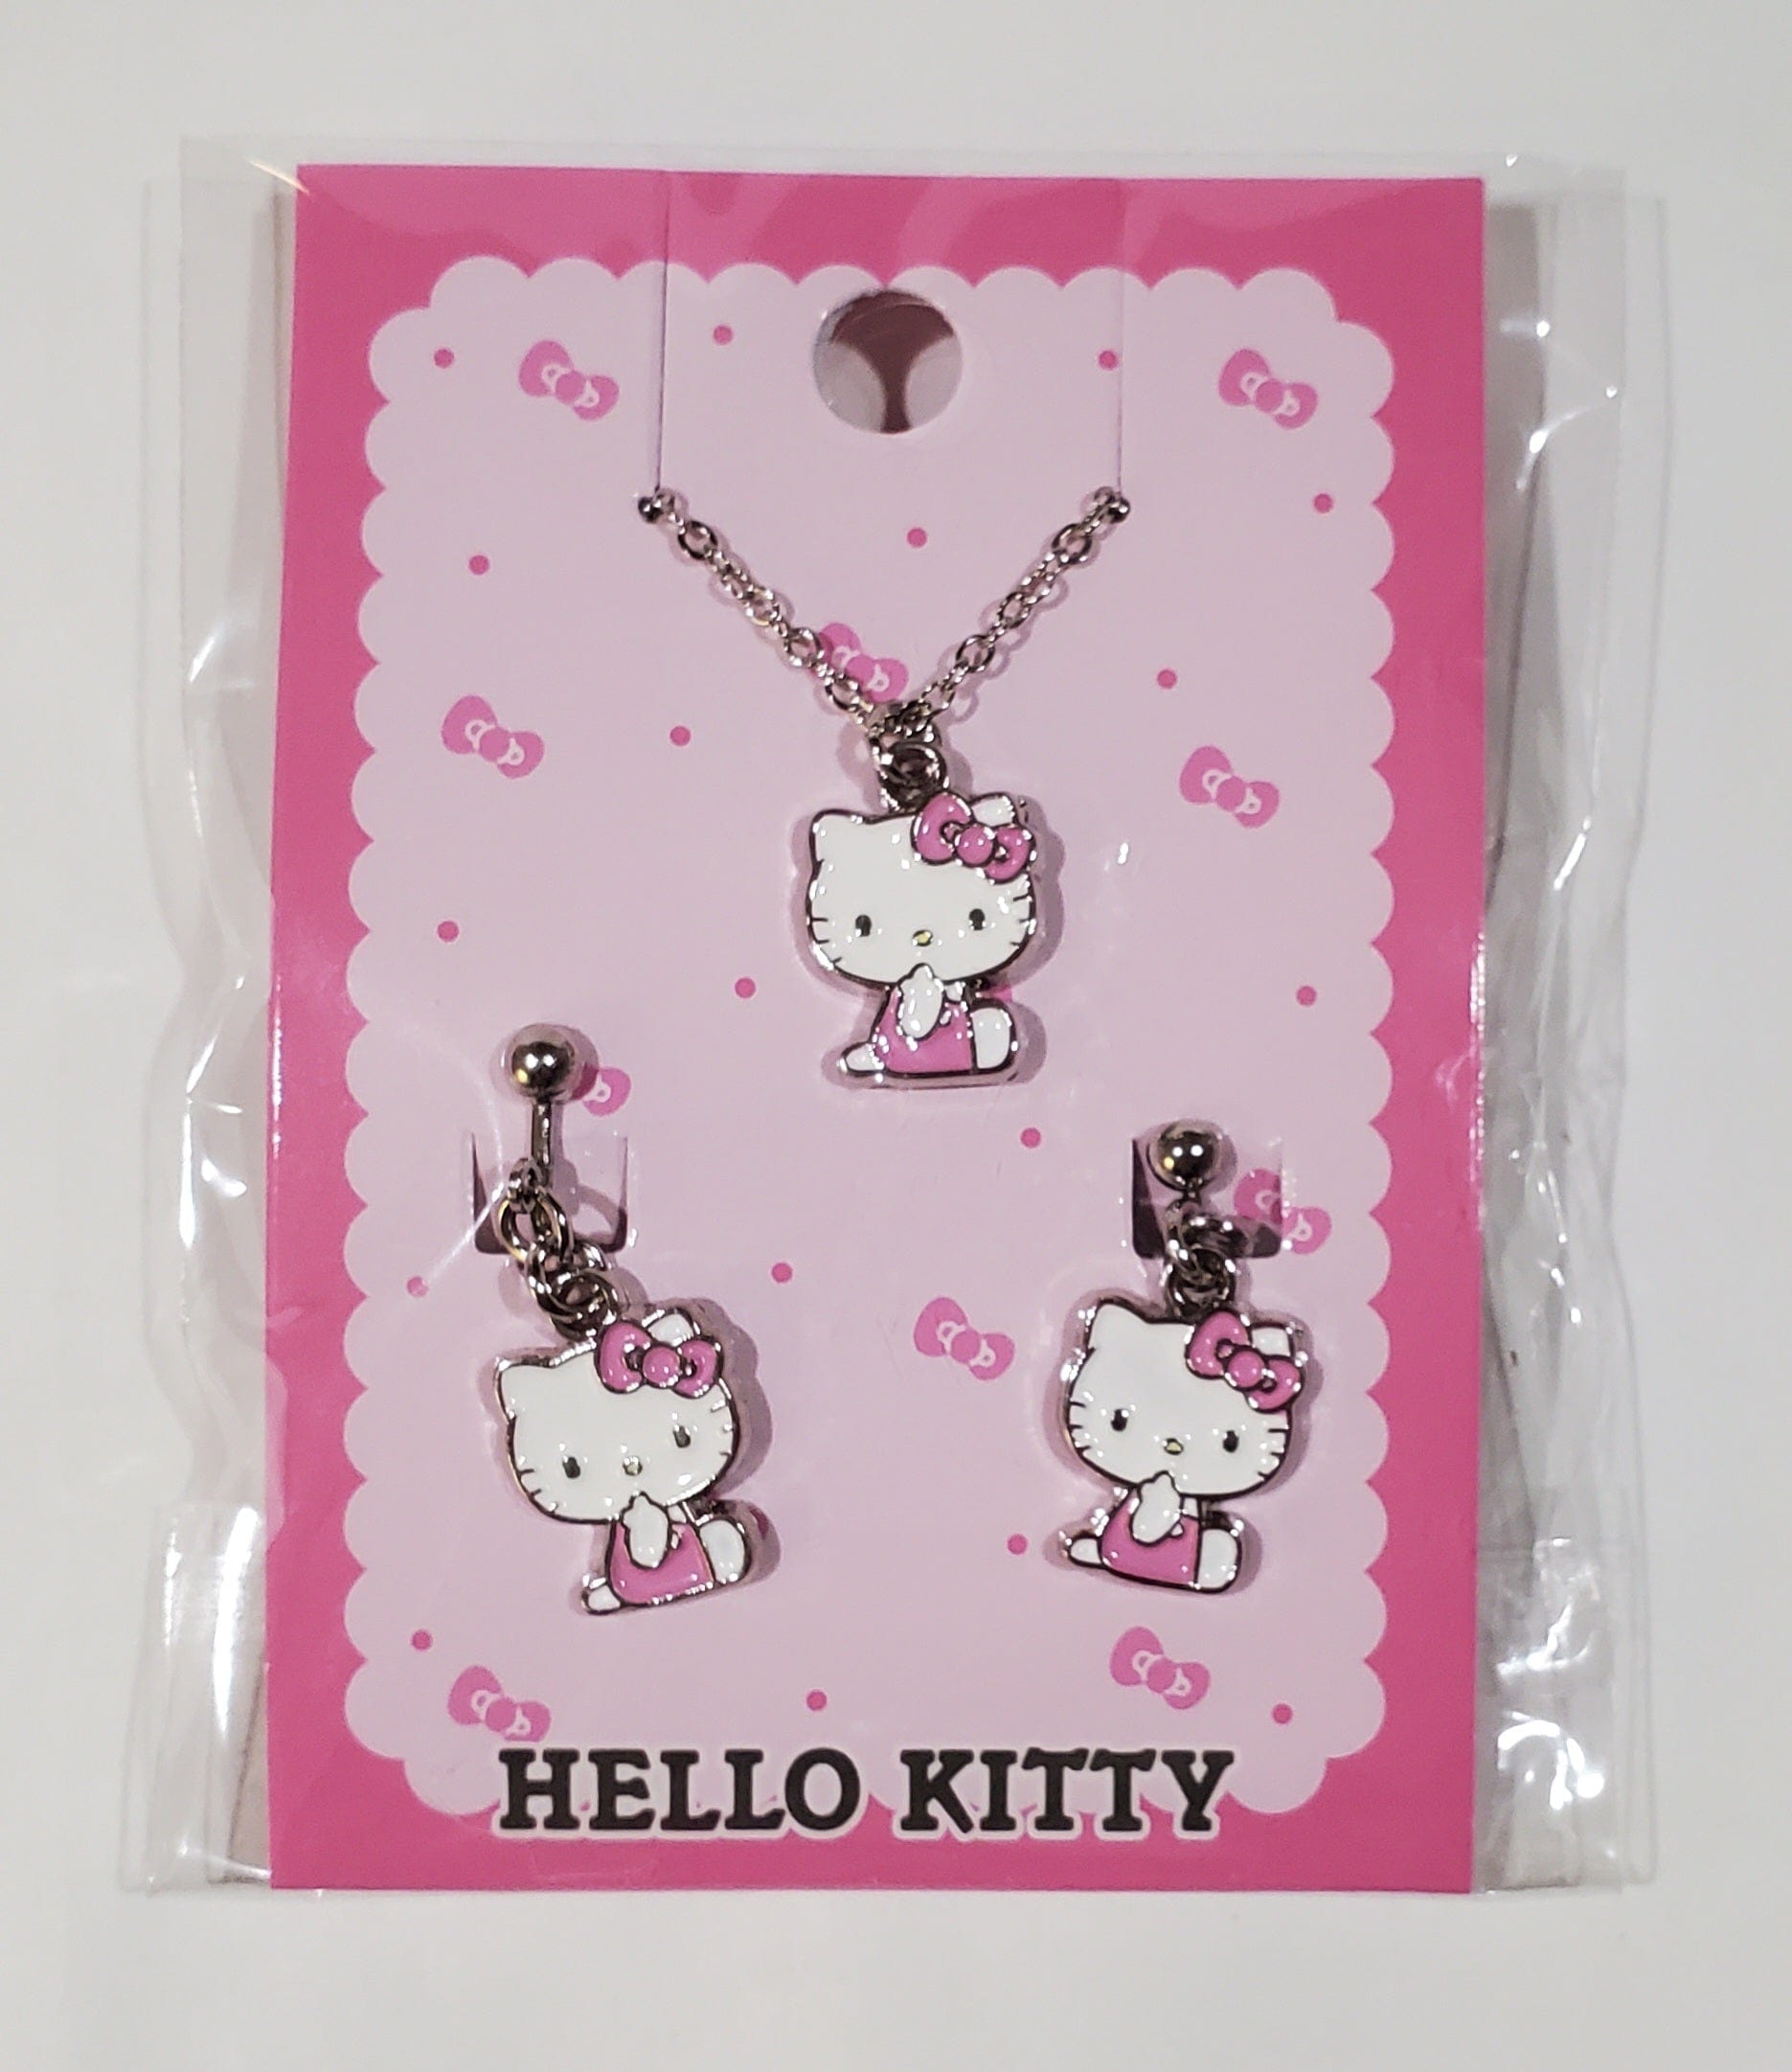 Enesco Sanrio Friends Necklace & Earrings Set: Cinnamoroll, Little Twin Stars, My Melody & Hello Kitty Kawaii Gifts